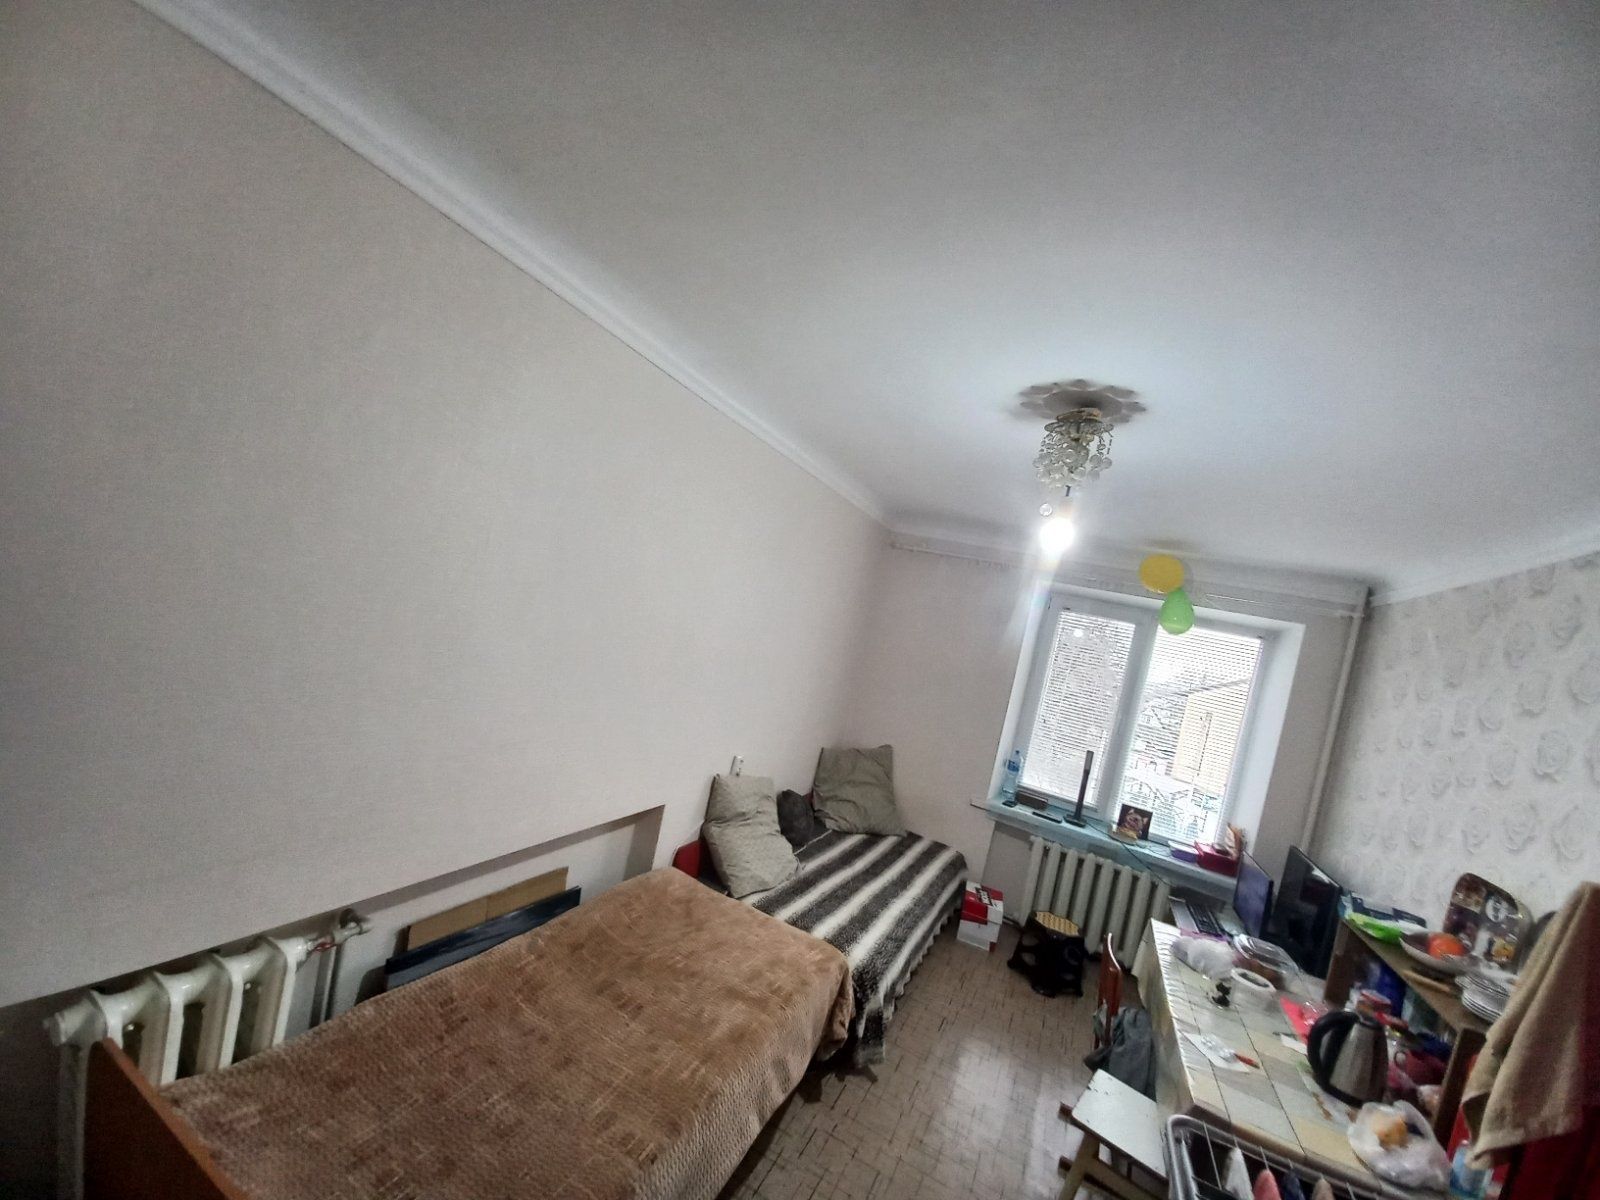 Продам комнату в общежитии, Новомосковск